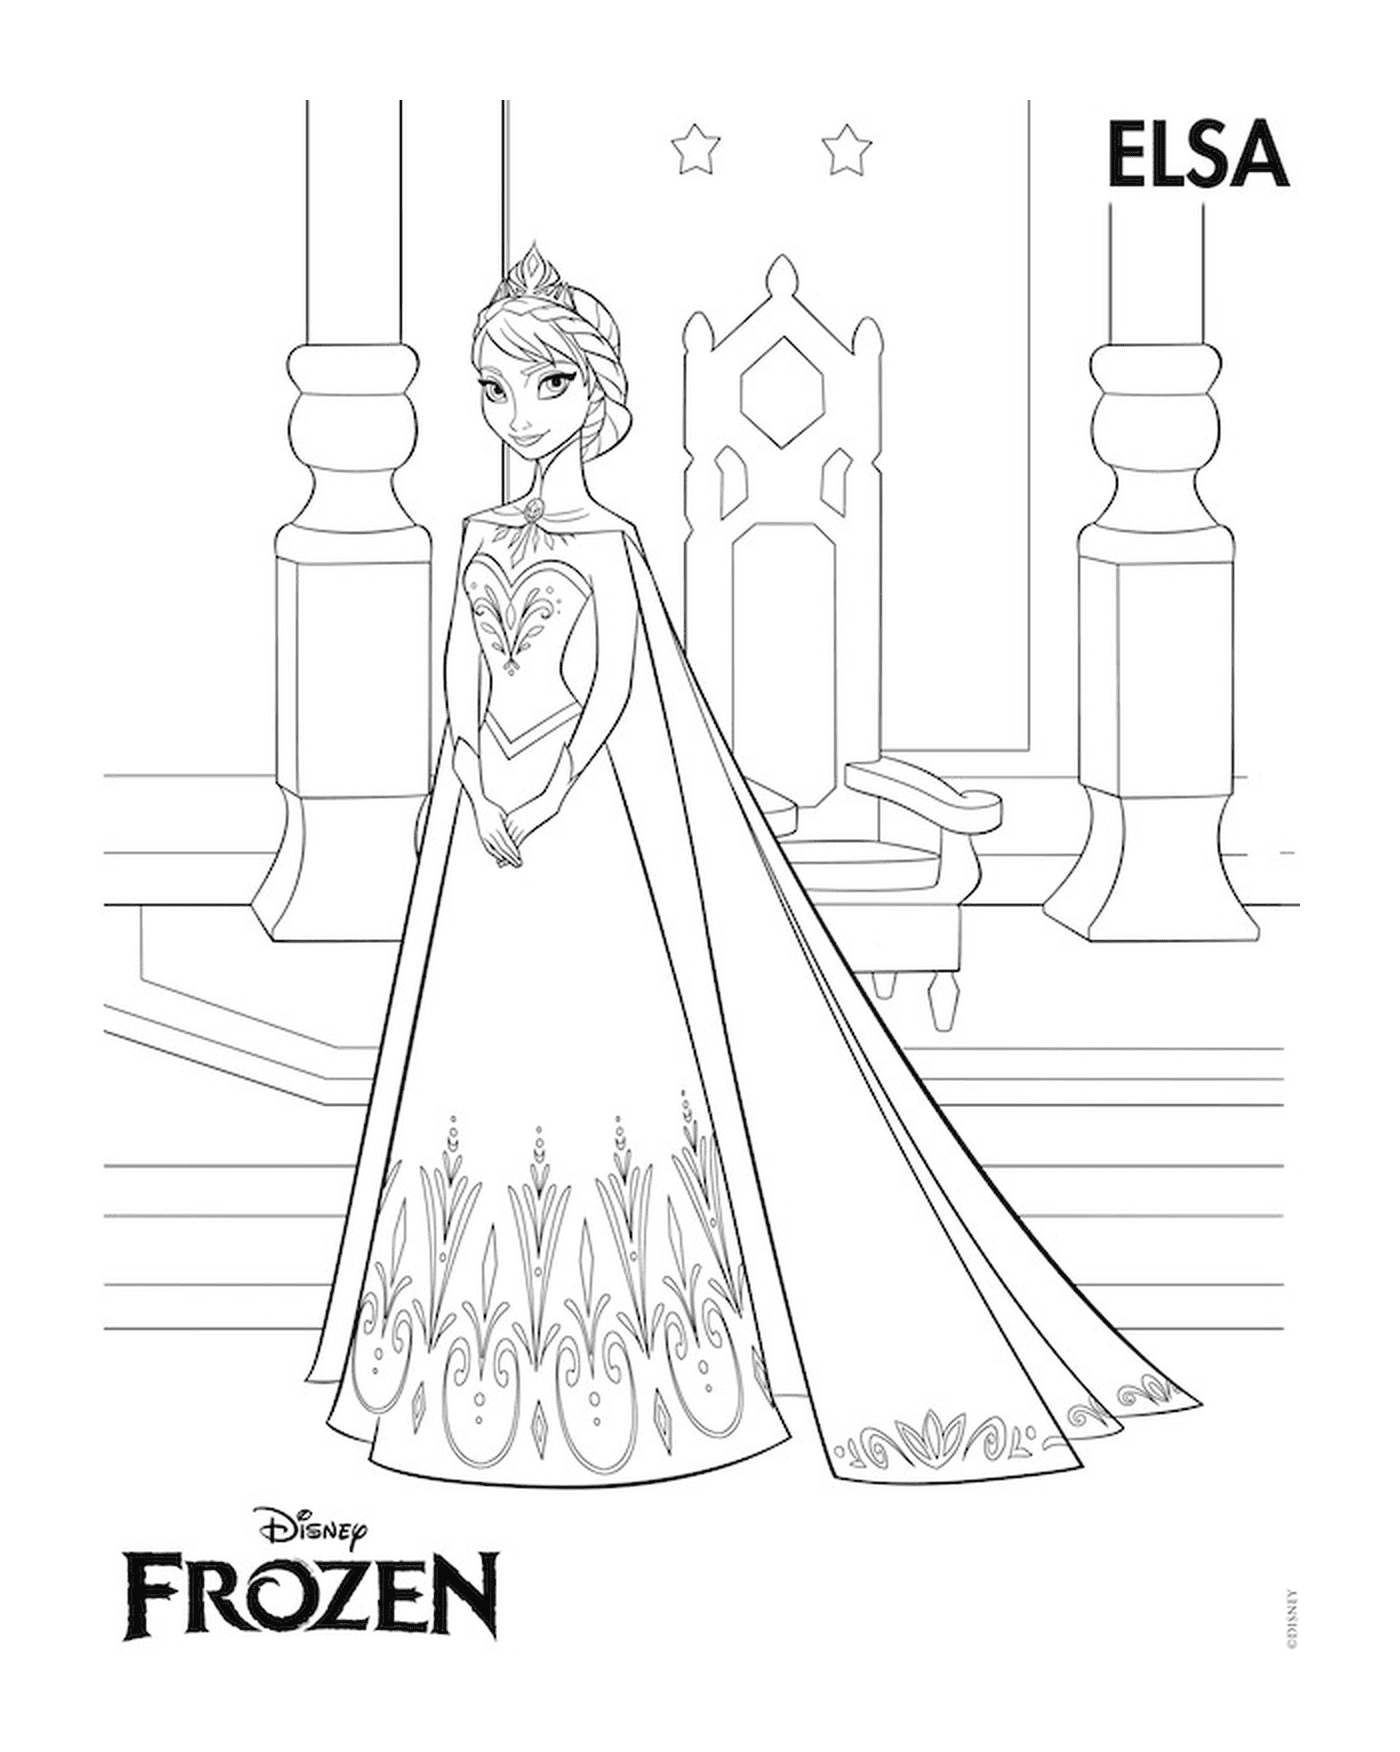   Elsa de La Reine des neiges, Disney 